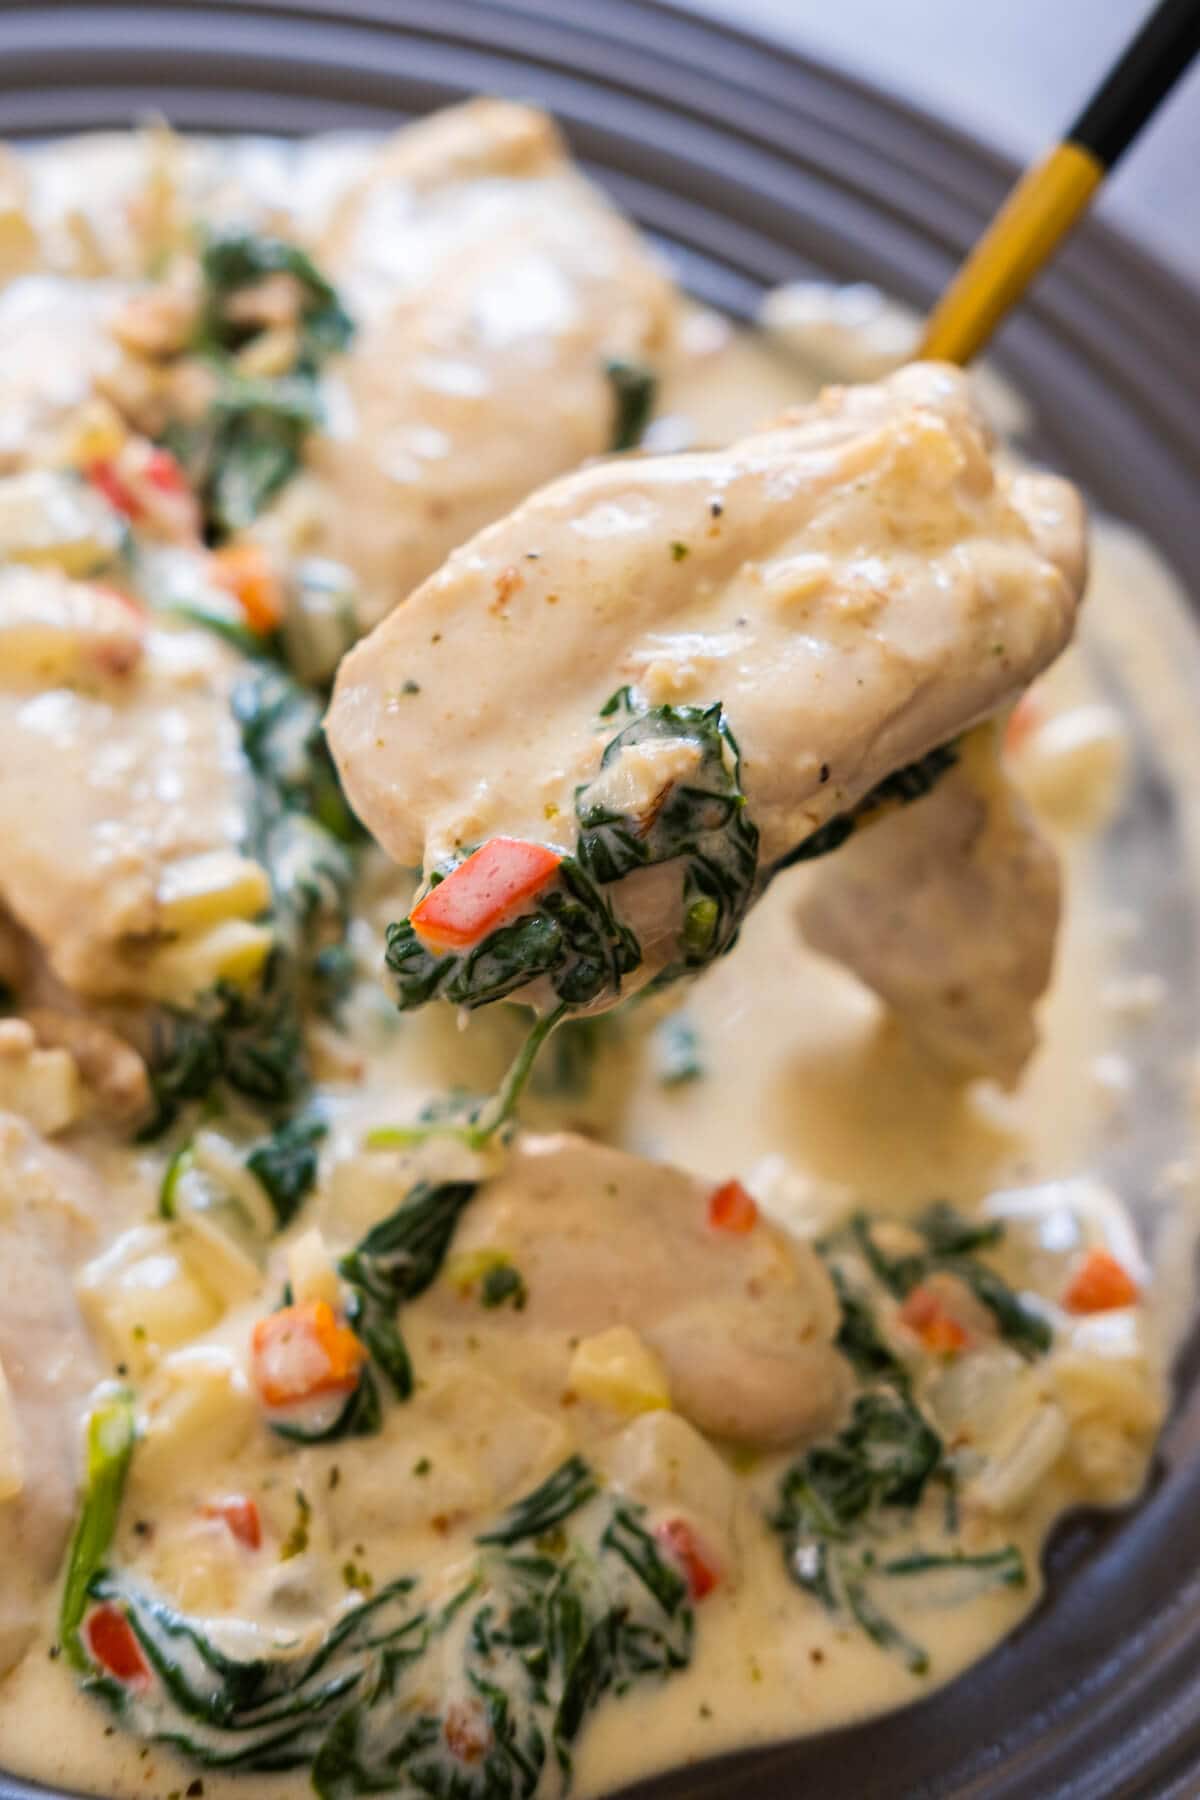 Garlic butter chicken thighs in creamy Parmesan sauce.